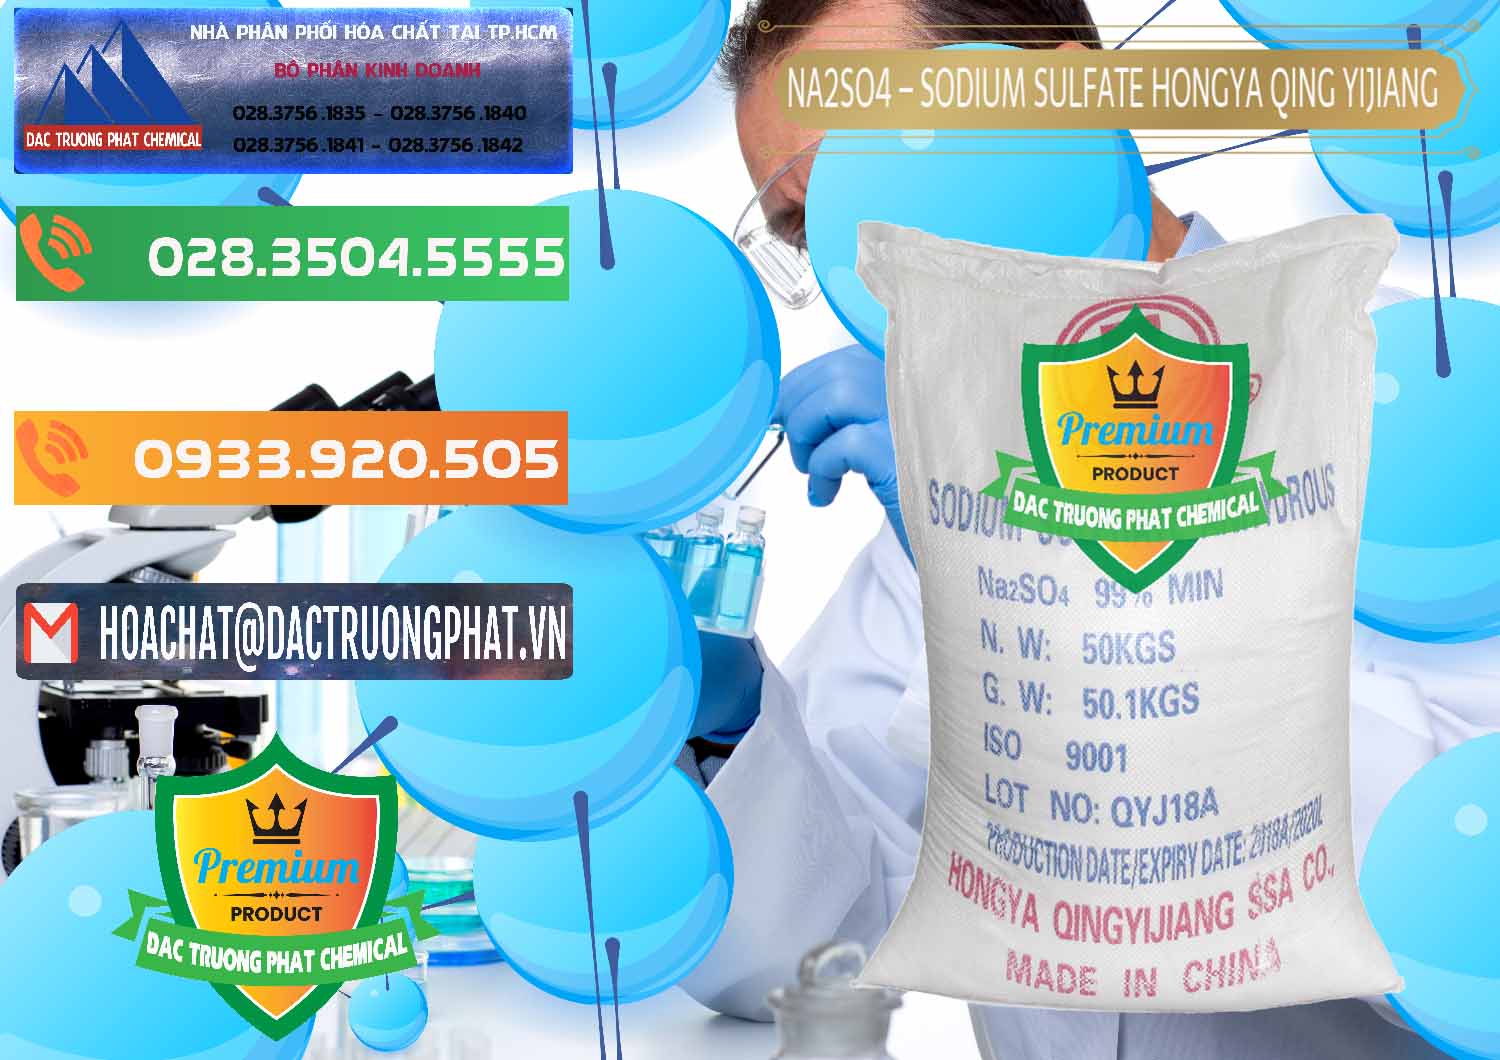 Cty phân phối _ bán Sodium Sulphate - Muối Sunfat Na2SO4 Logo Cánh Bườm Hongya Qing Yi Trung Quốc China - 0098 - Cung cấp _ phân phối hóa chất tại TP.HCM - hoachatxulynuoc.com.vn